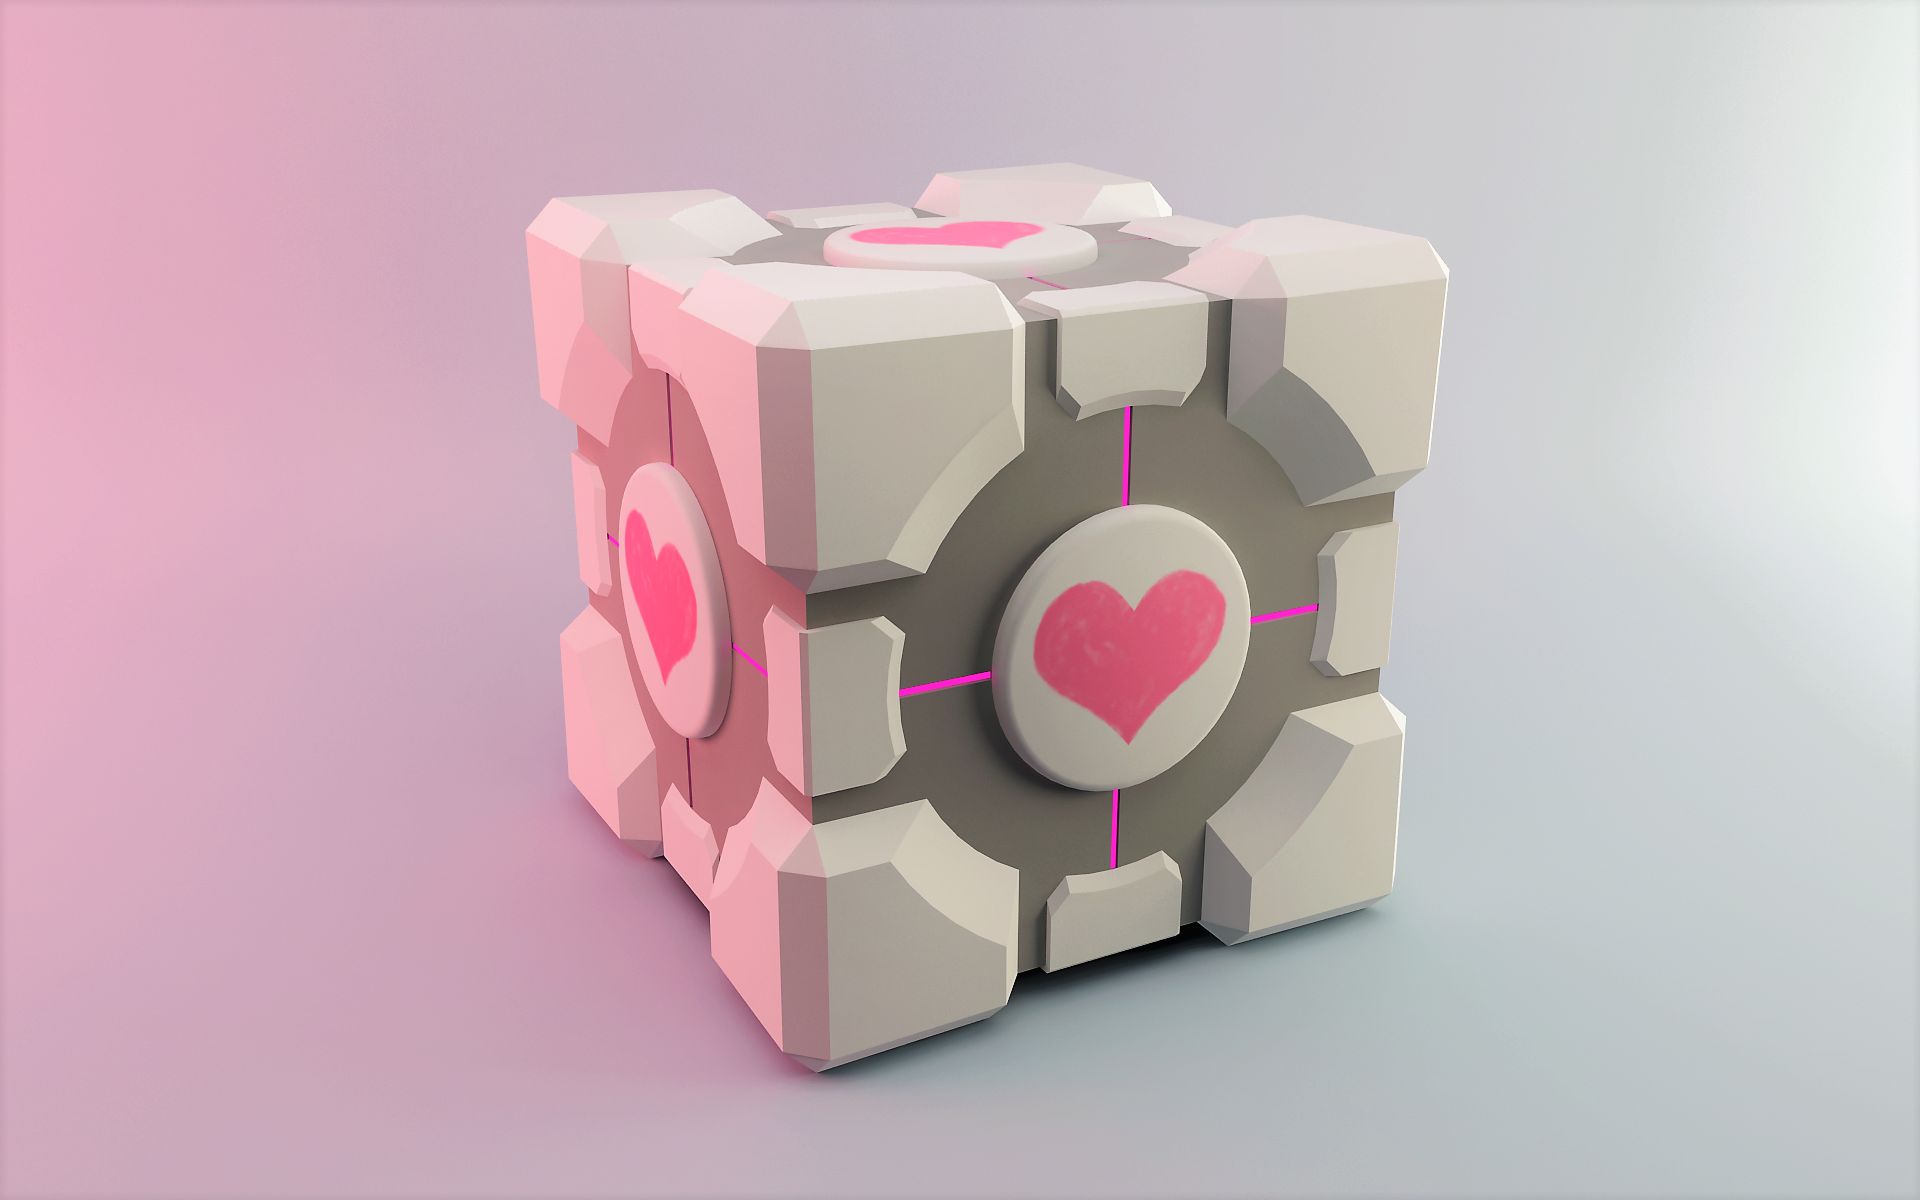 companion cube wallpaper